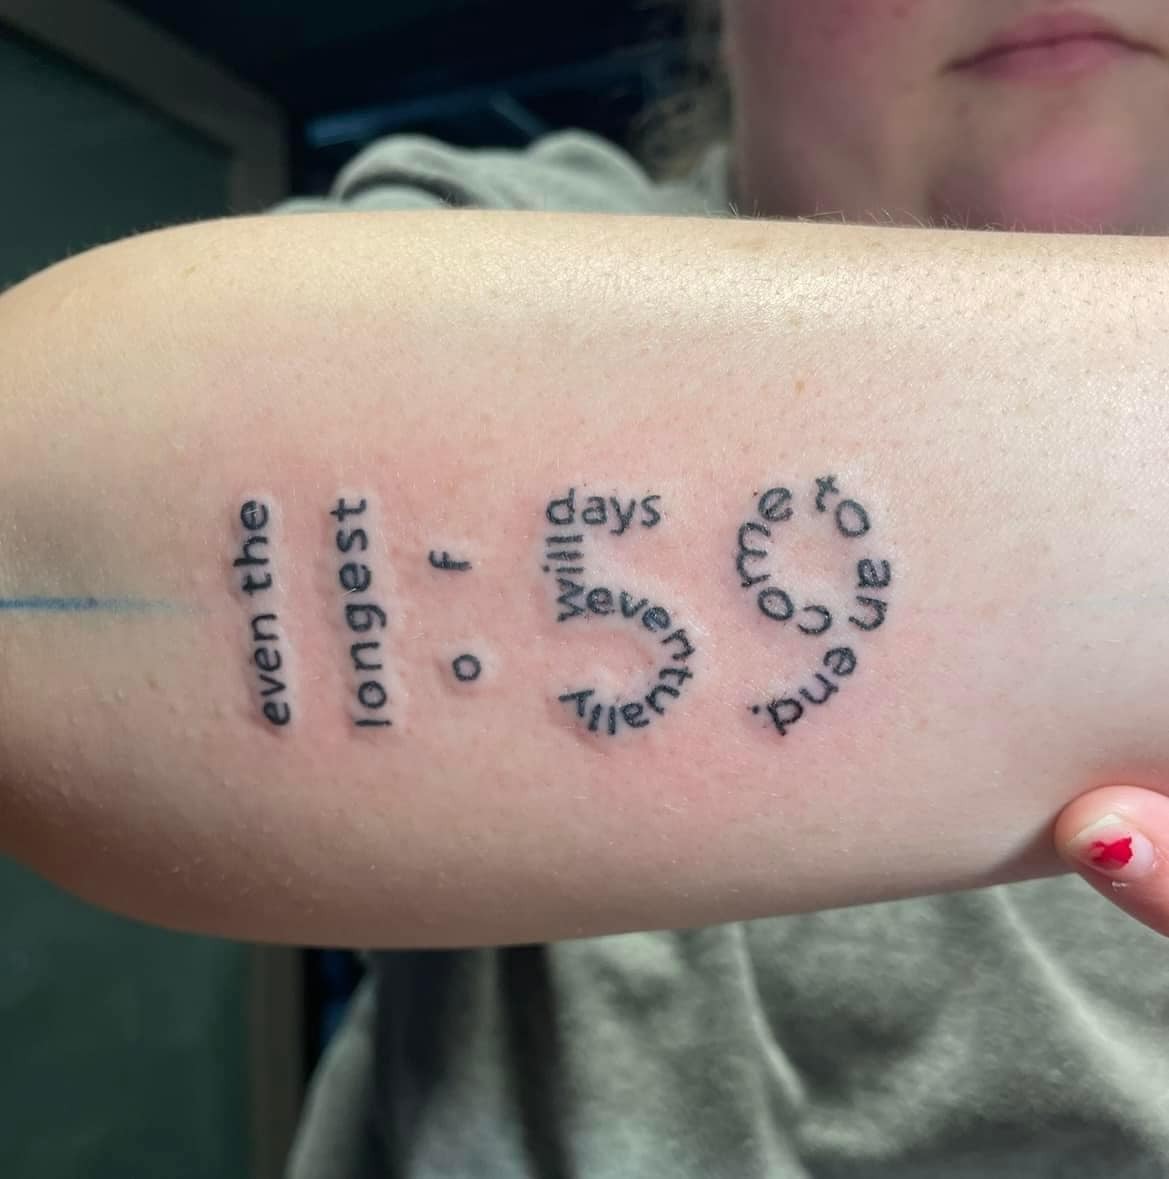 “Je ne suis pas en train de tatouer, mais je suis en train de tatouer et désolé que tu doives faire avec. ça” : 50 des pires tatouages (nouvelles photos)